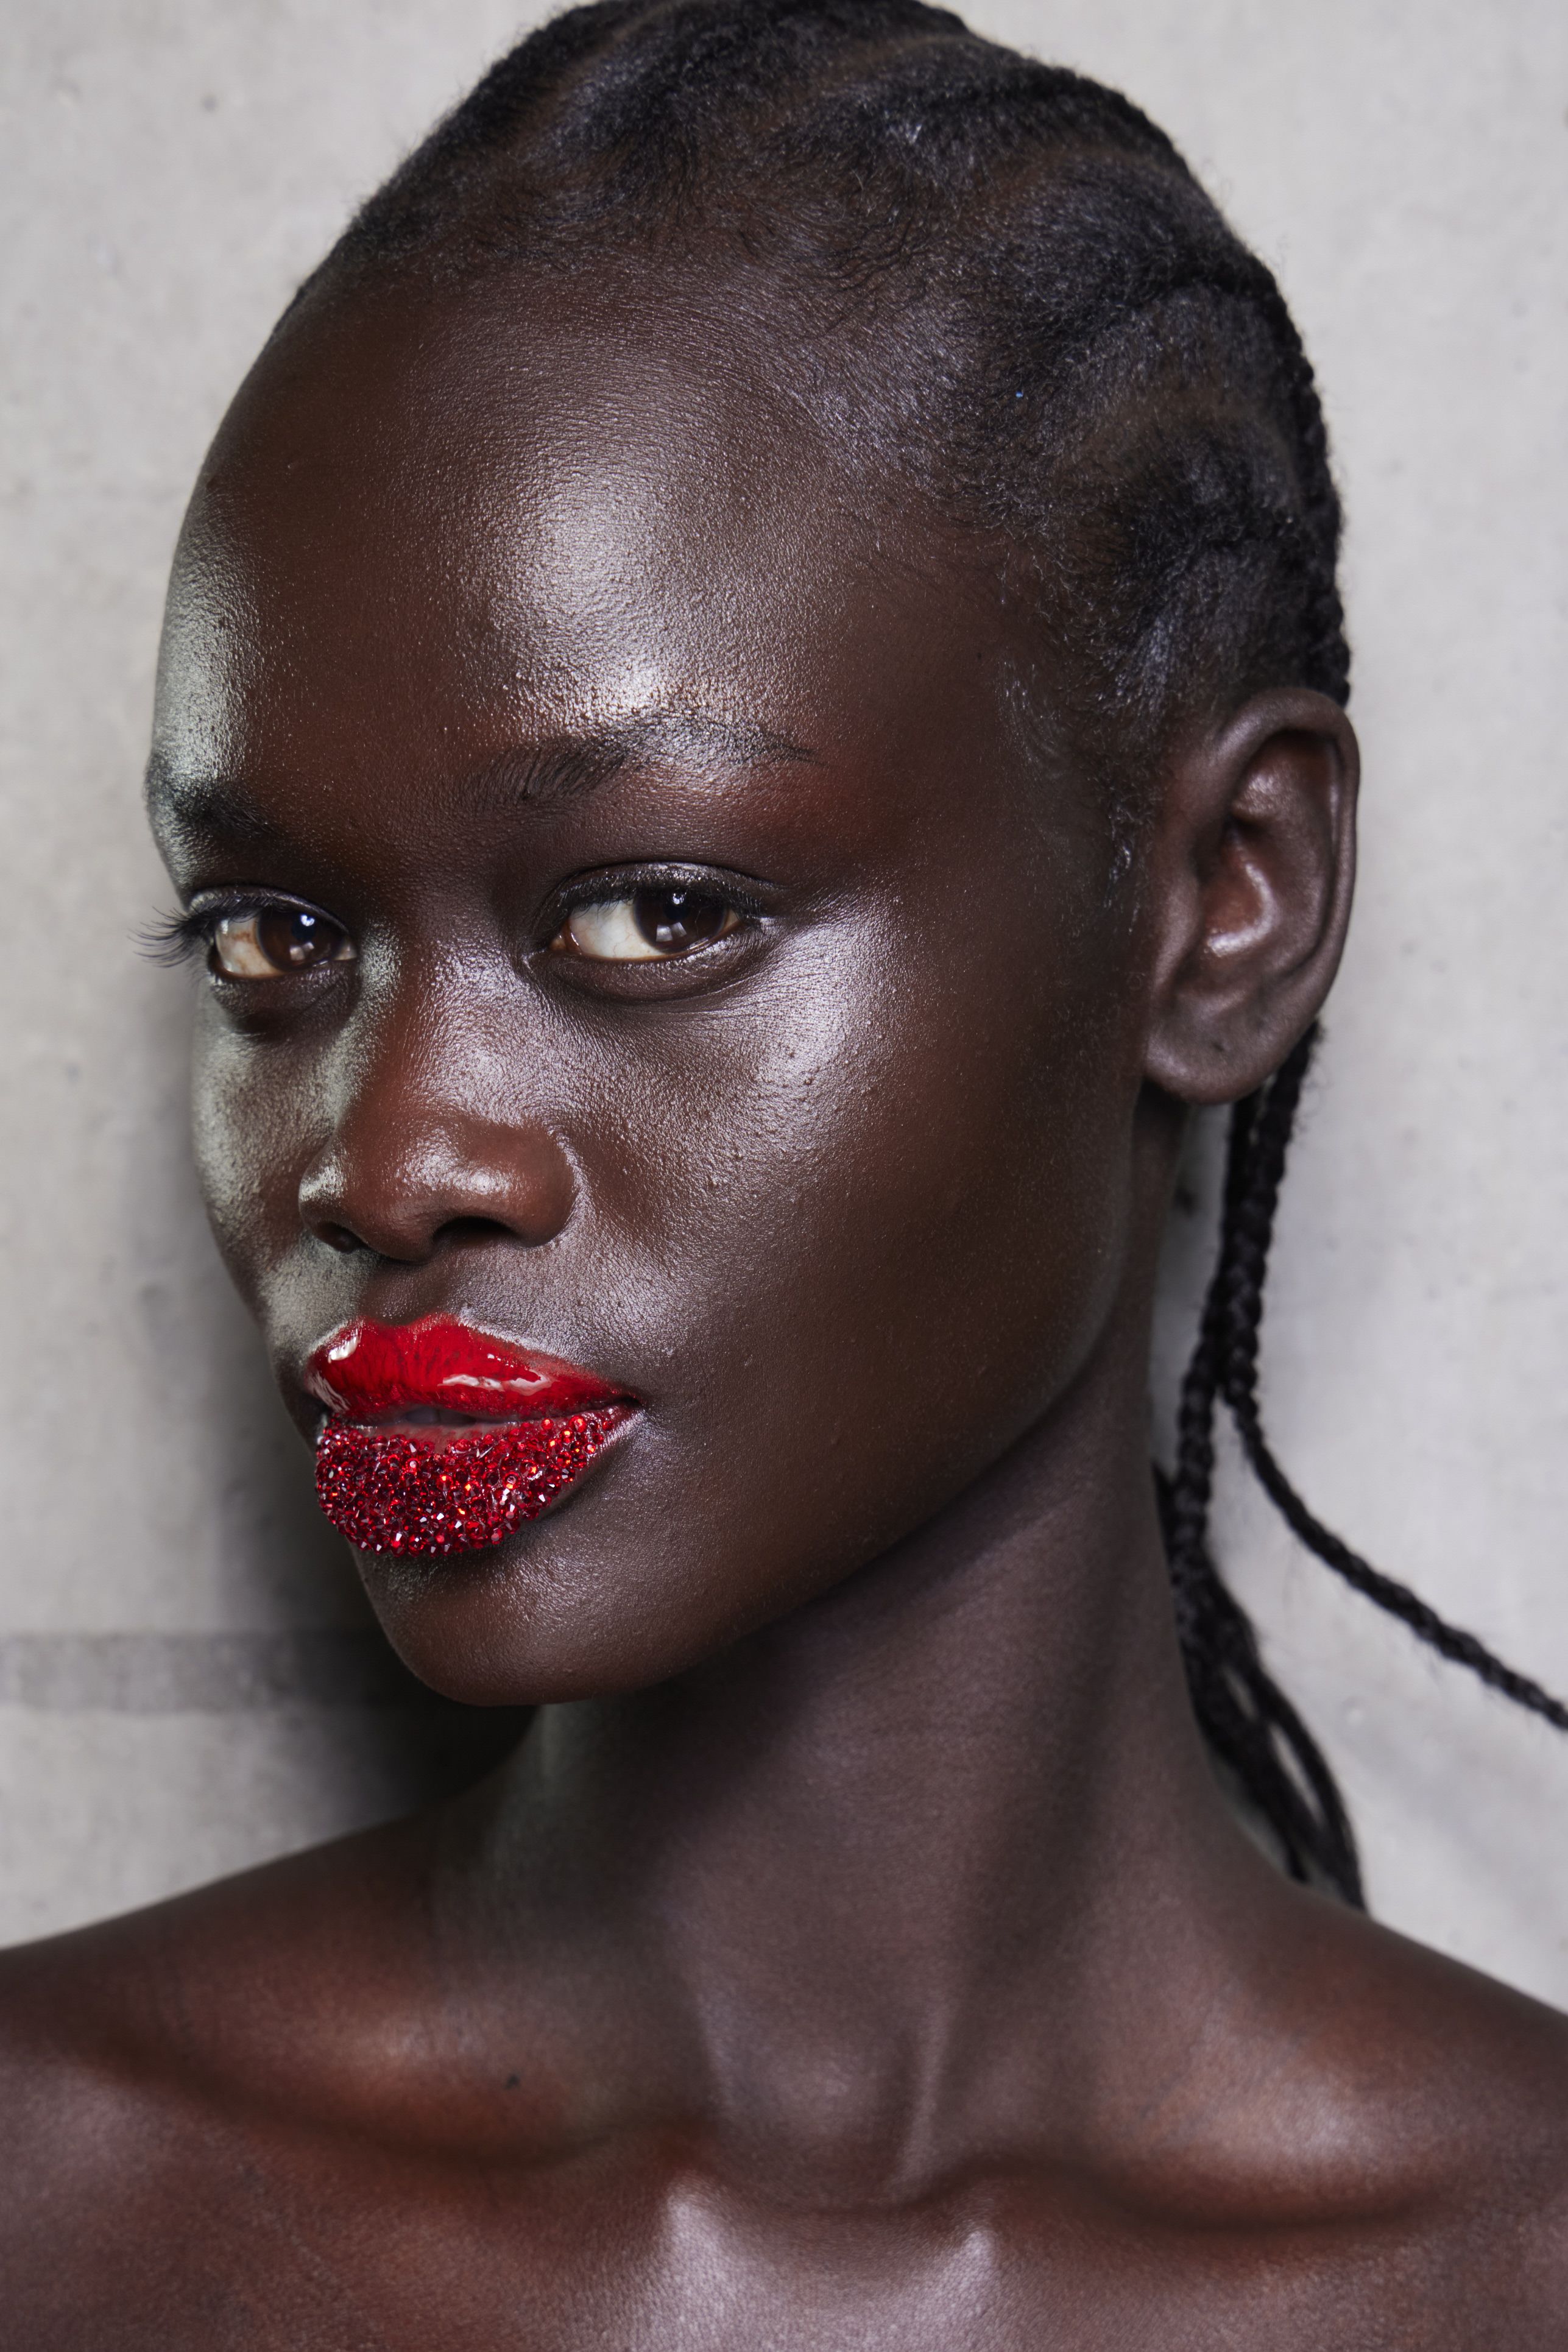 Louis Vuitton makeup on black woman!